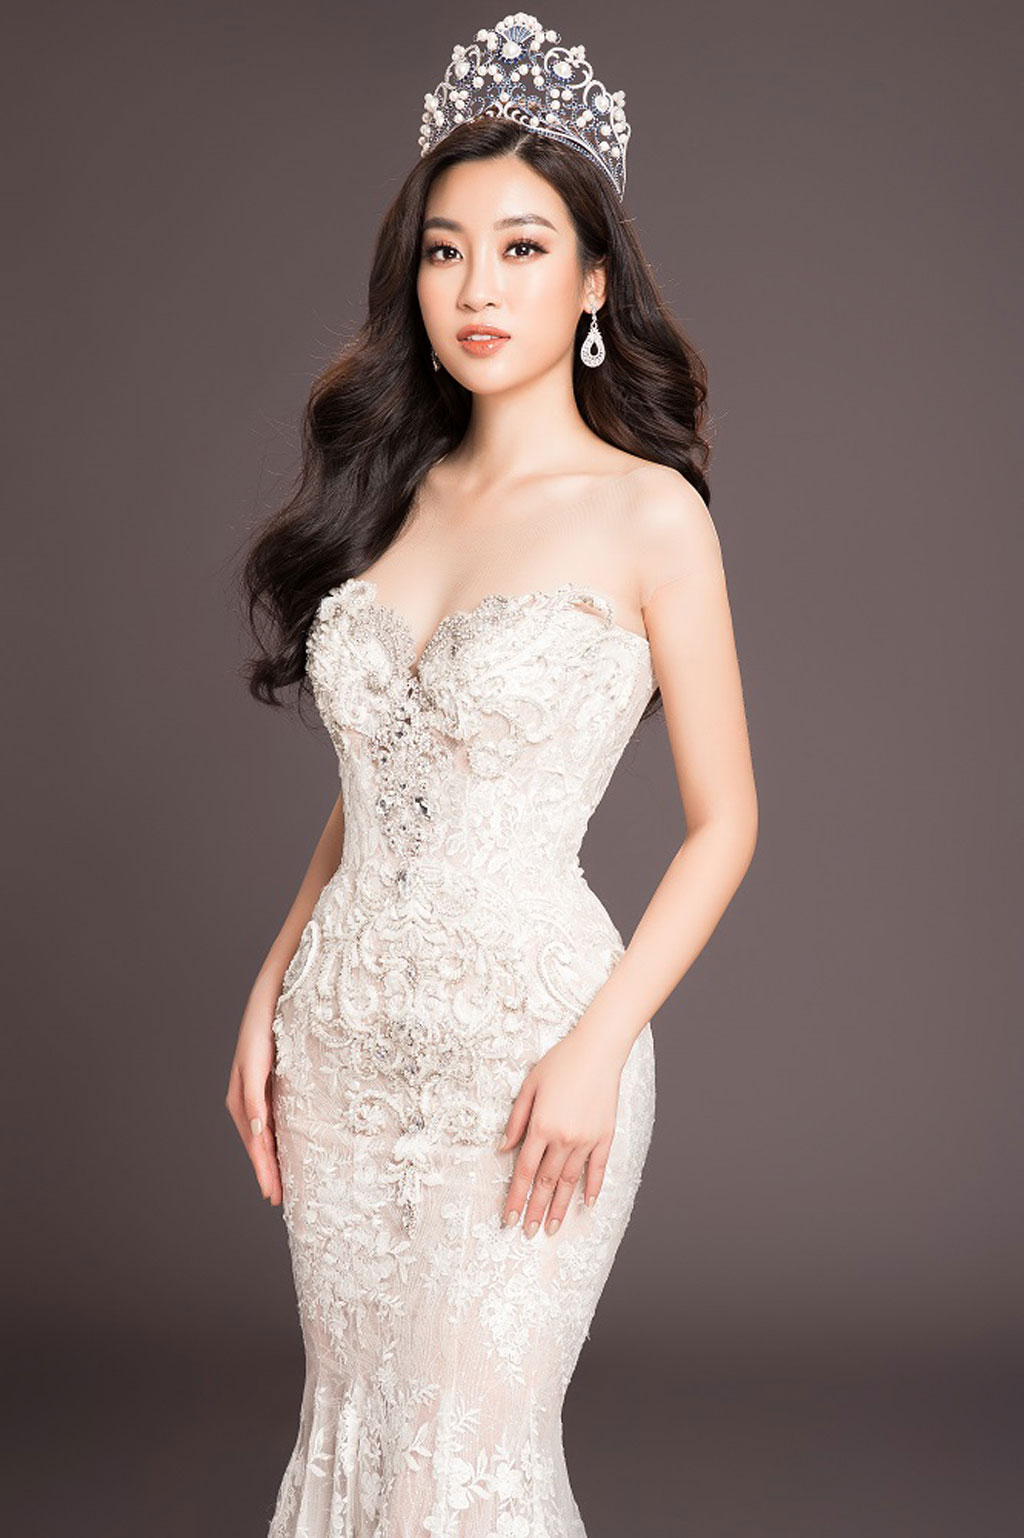 Top 3 Hoa hậu Việt Nam rạng rỡ với đầm dạ hội trước khi kết thúc nhiệm kì2